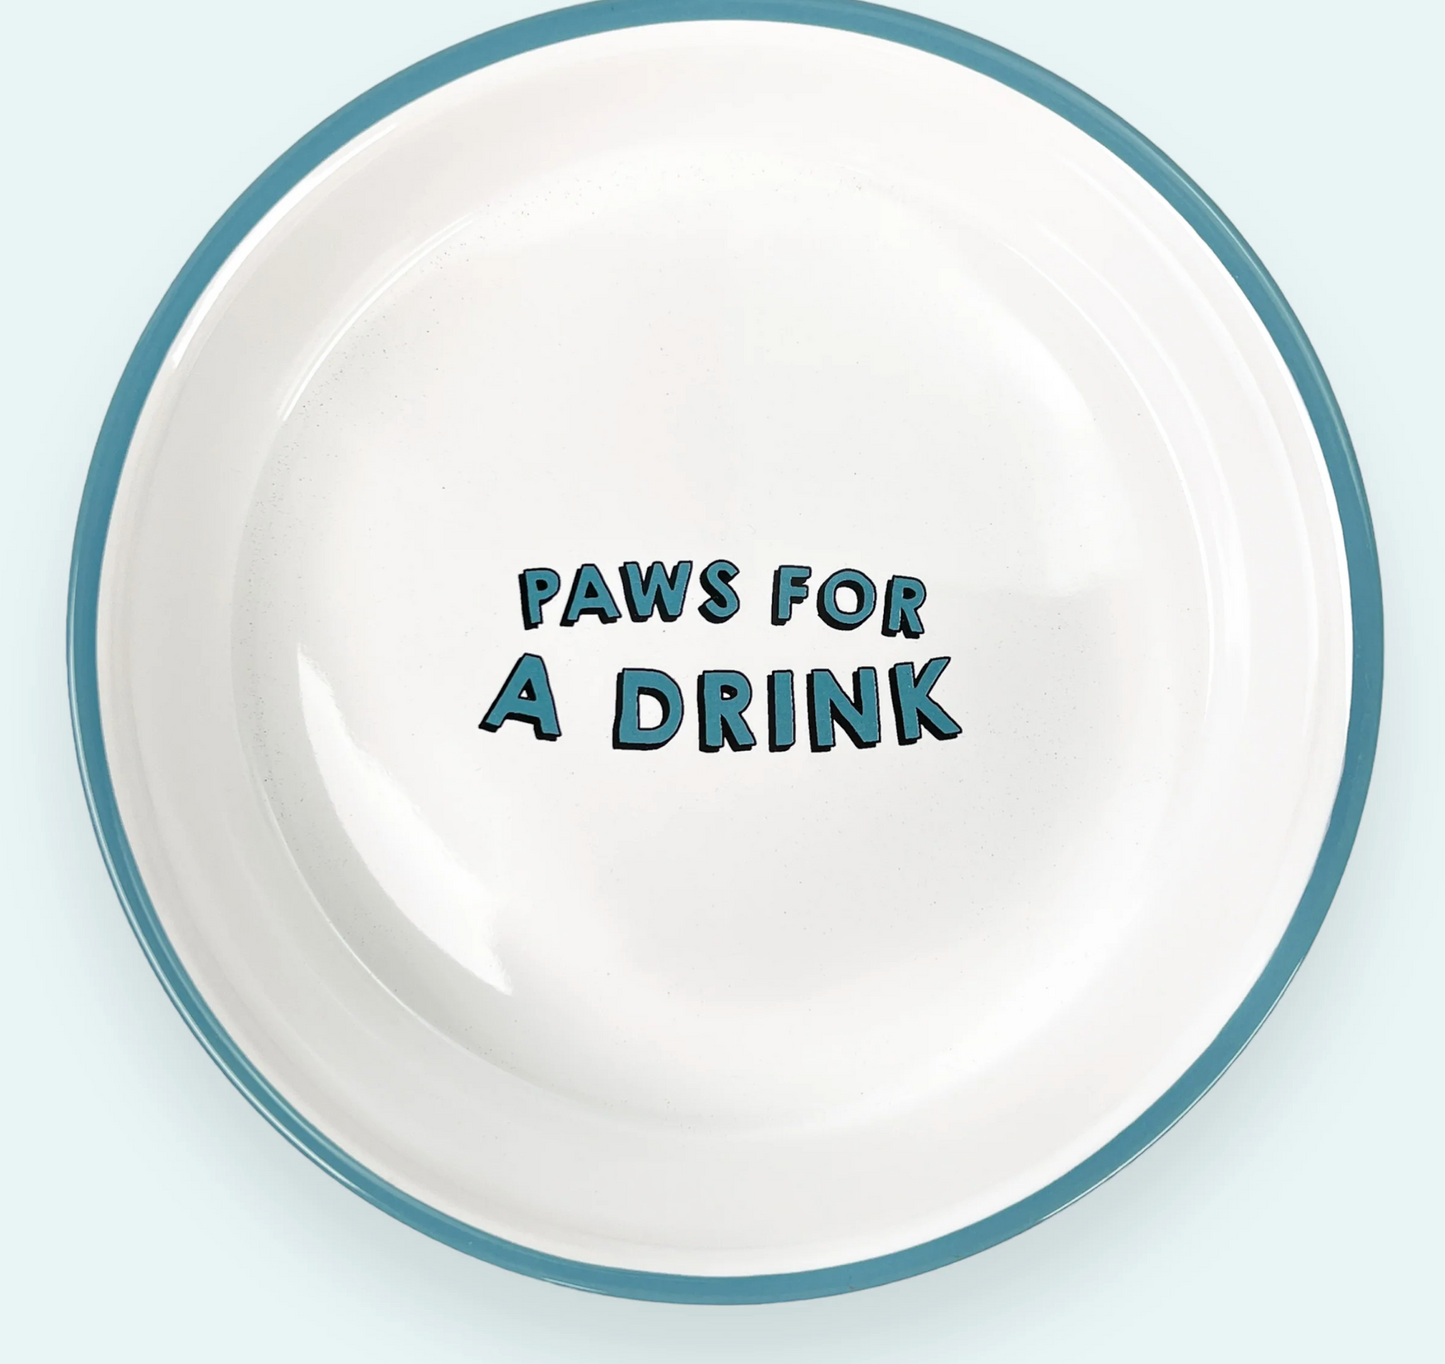 Pawsome Boutique Ceramic Pet Bowl, Hearts (Set Of 2)